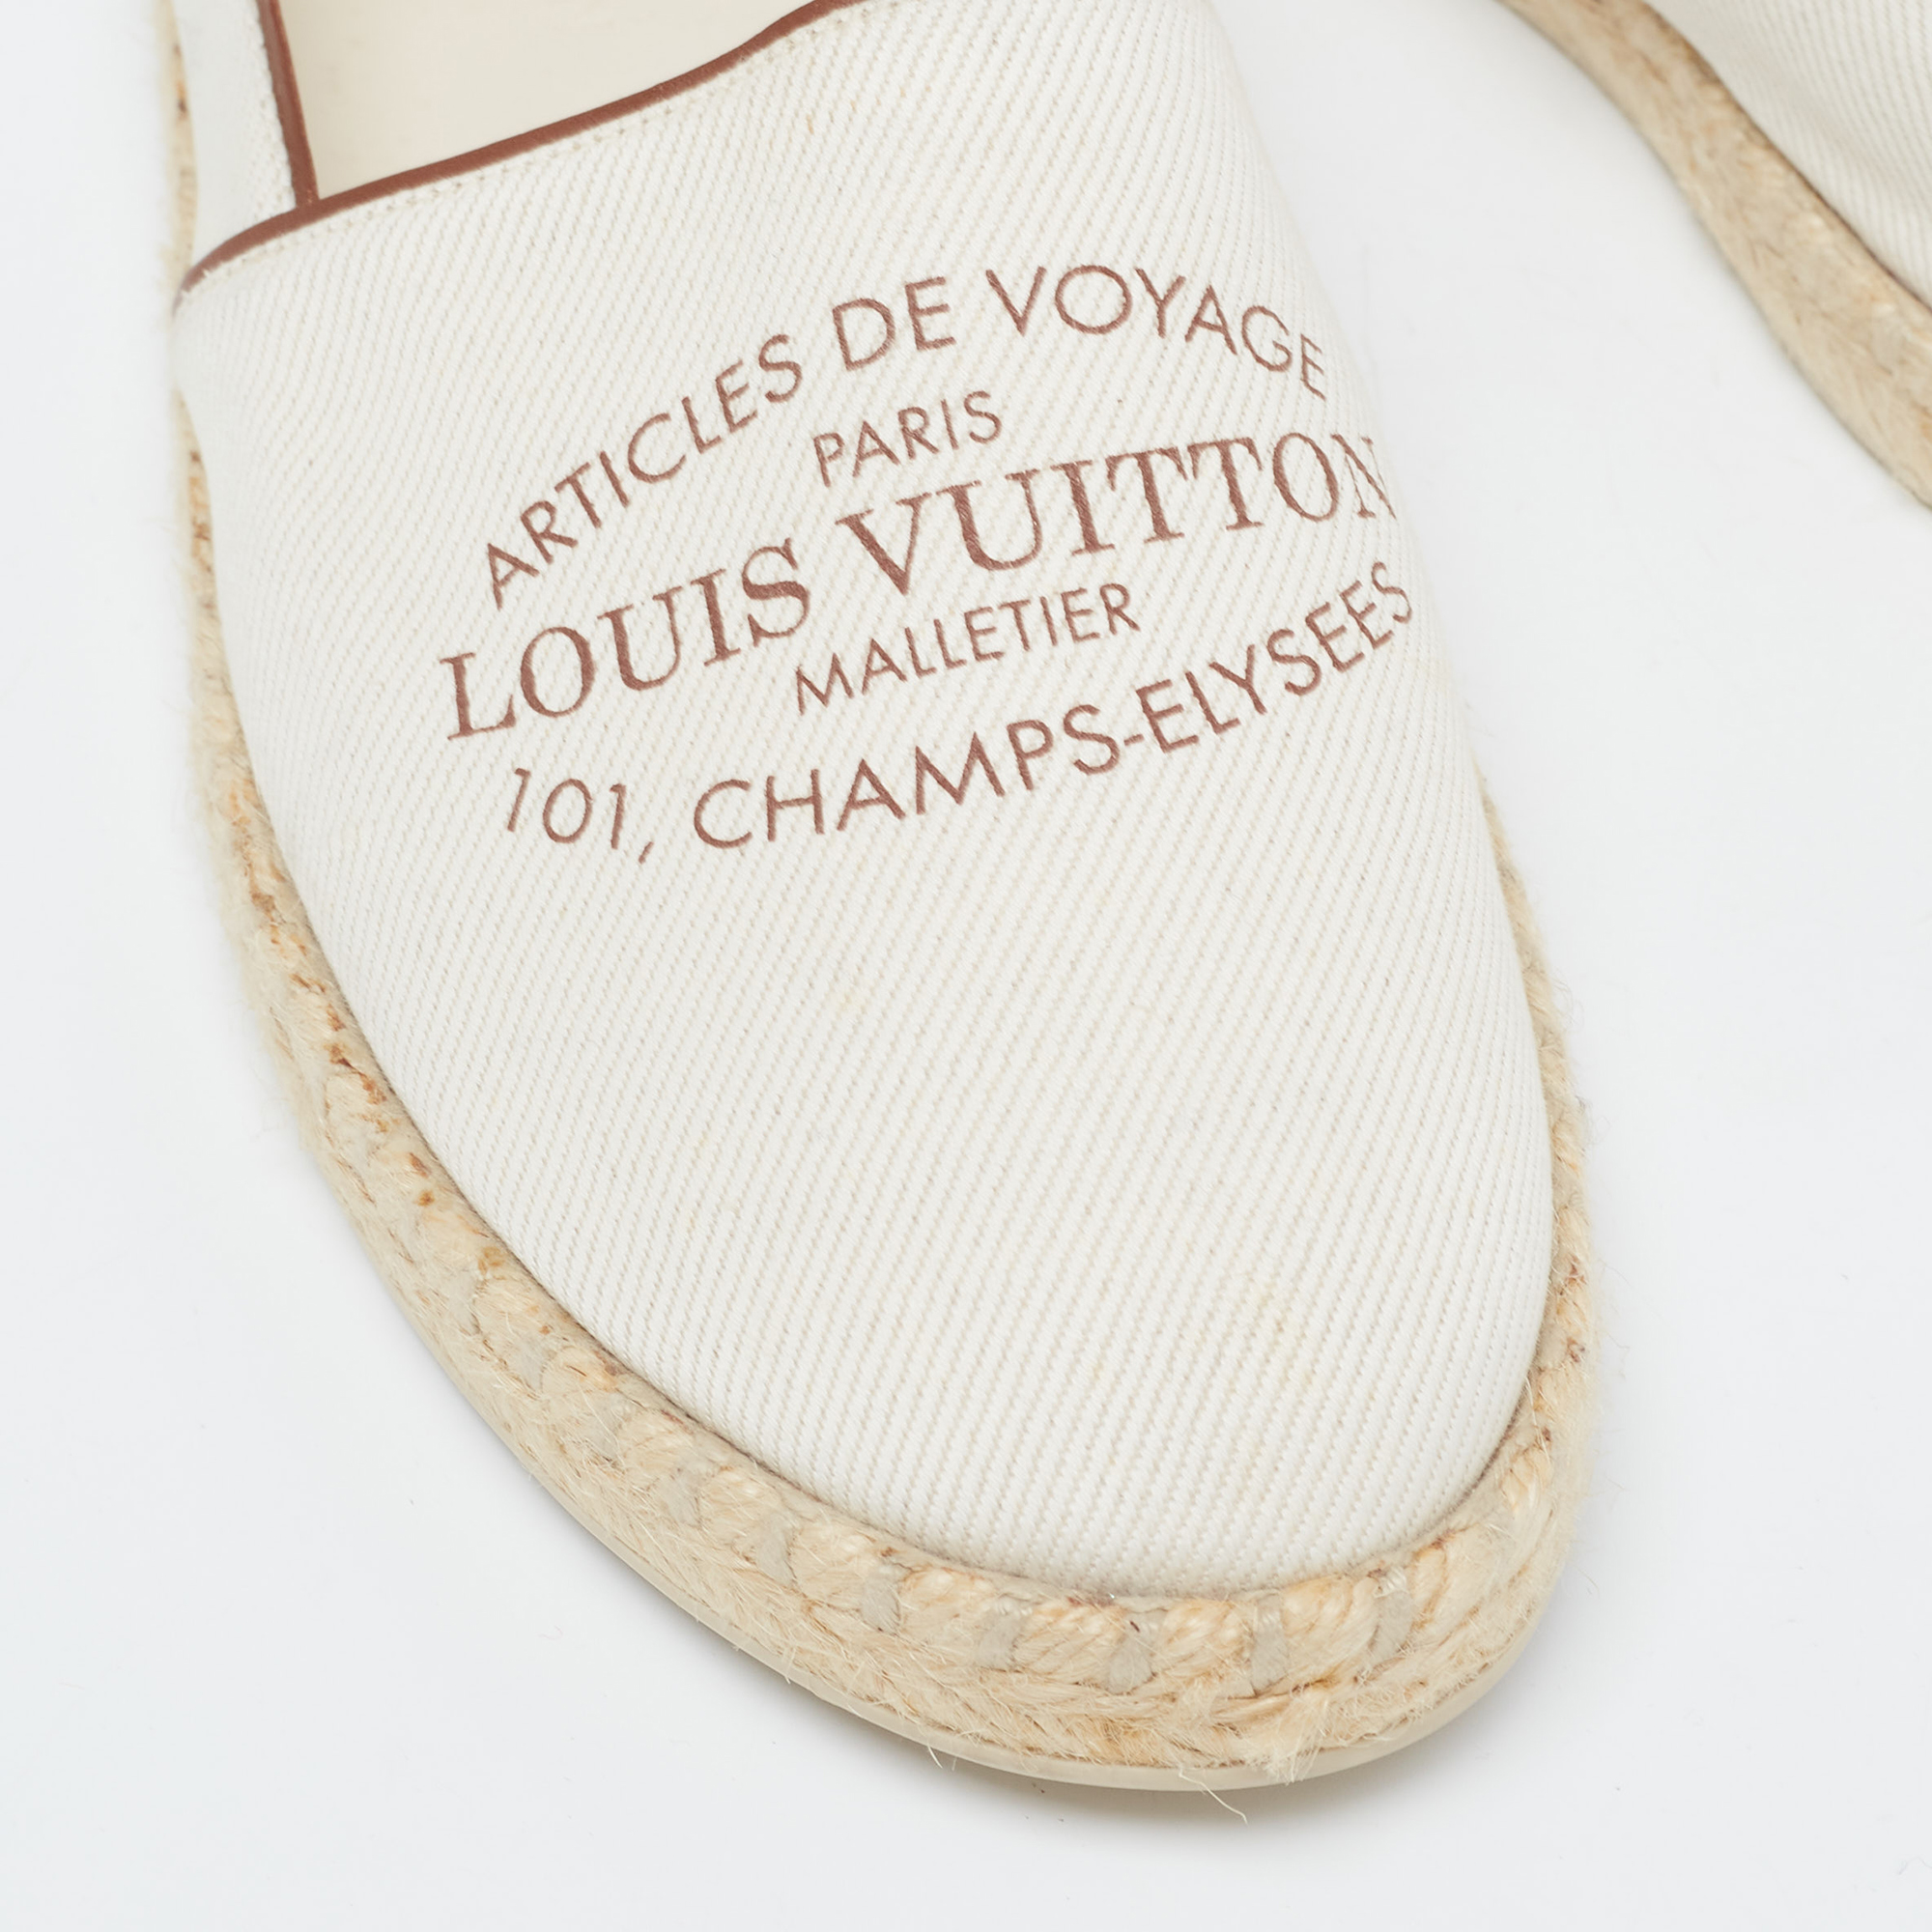 Louis Vuitton White Canvas And Leather Articles De Voyage Espadrille Flats Size 39